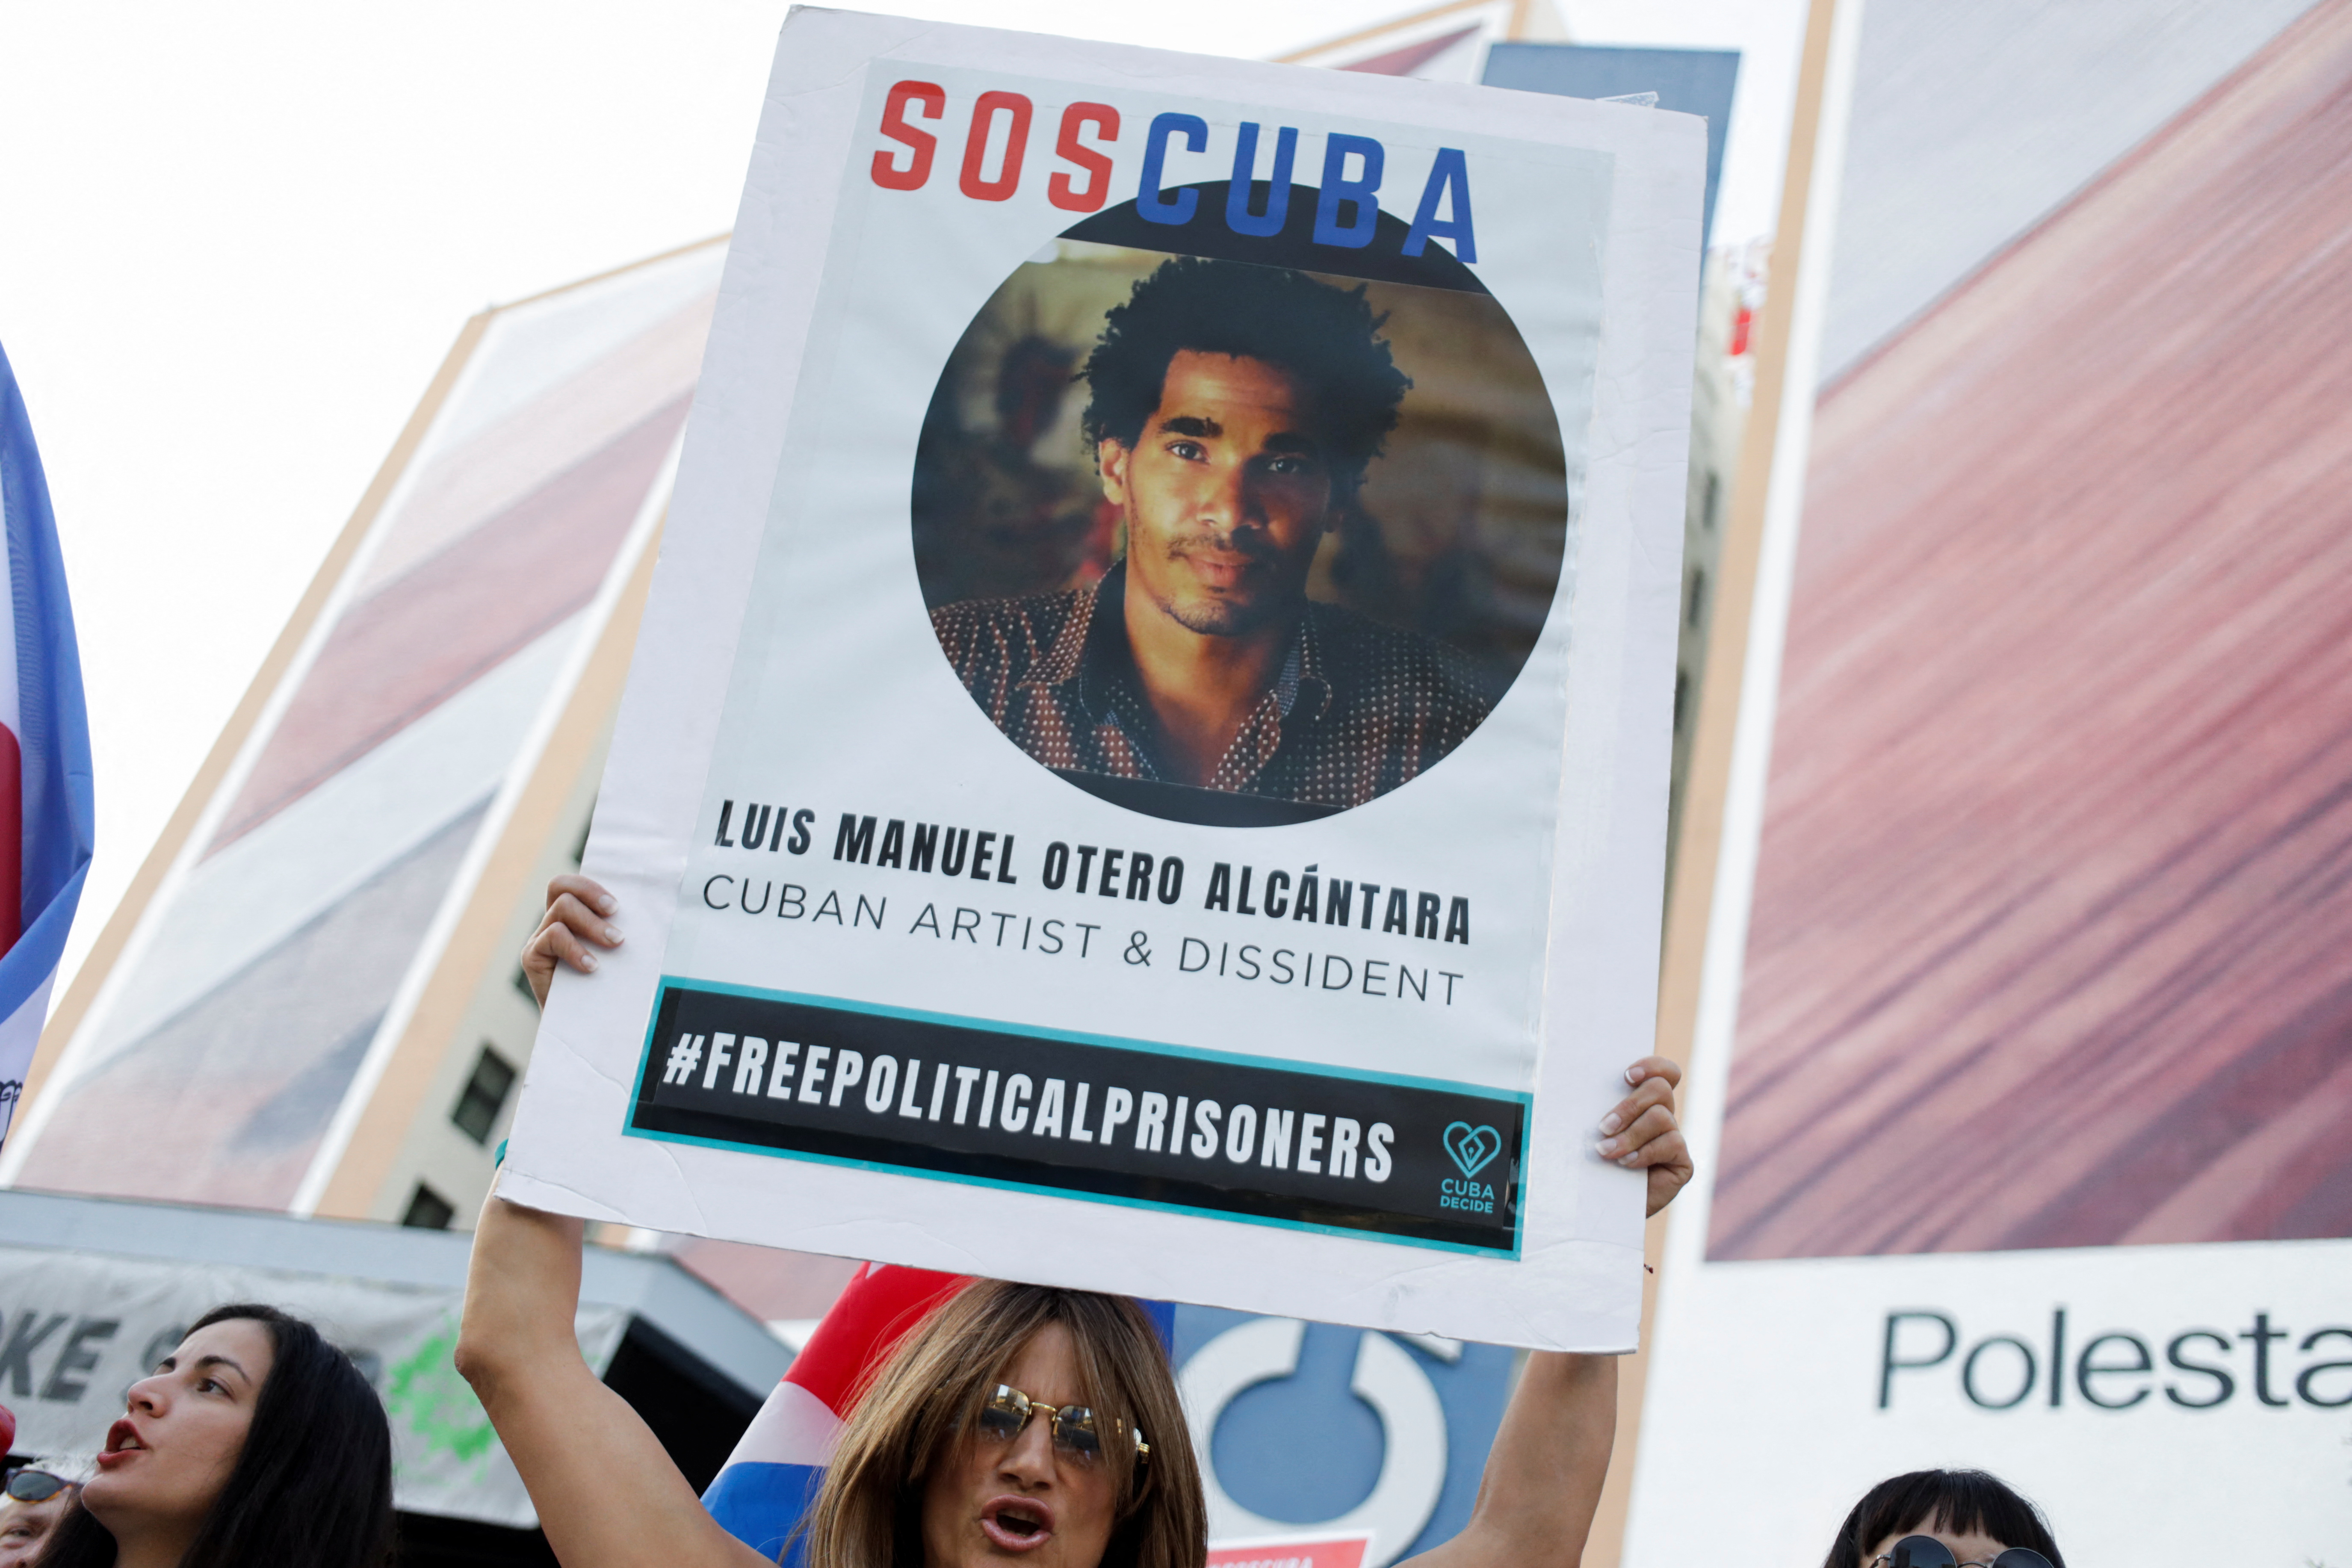 La cara de Luis Manuel Otero Alcantara en un cartel durante una protesta en Los Angeles (REUTERS/Daniel Becerril)